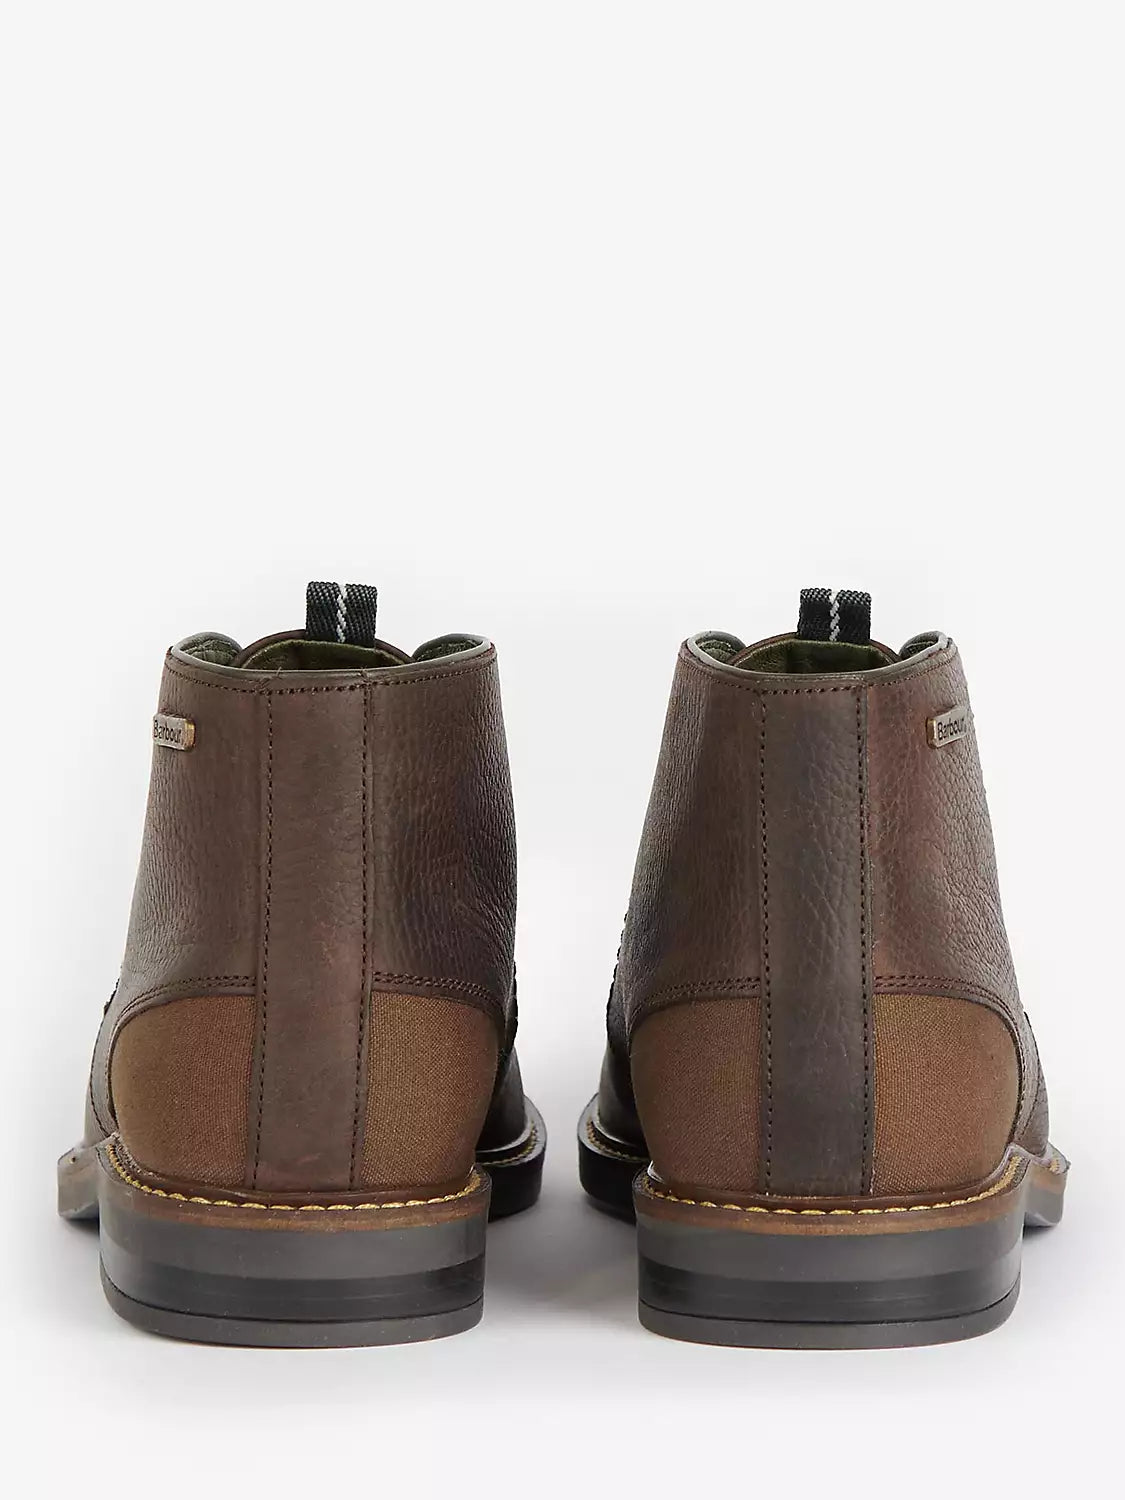 Men's Readhead Boots - Mocha